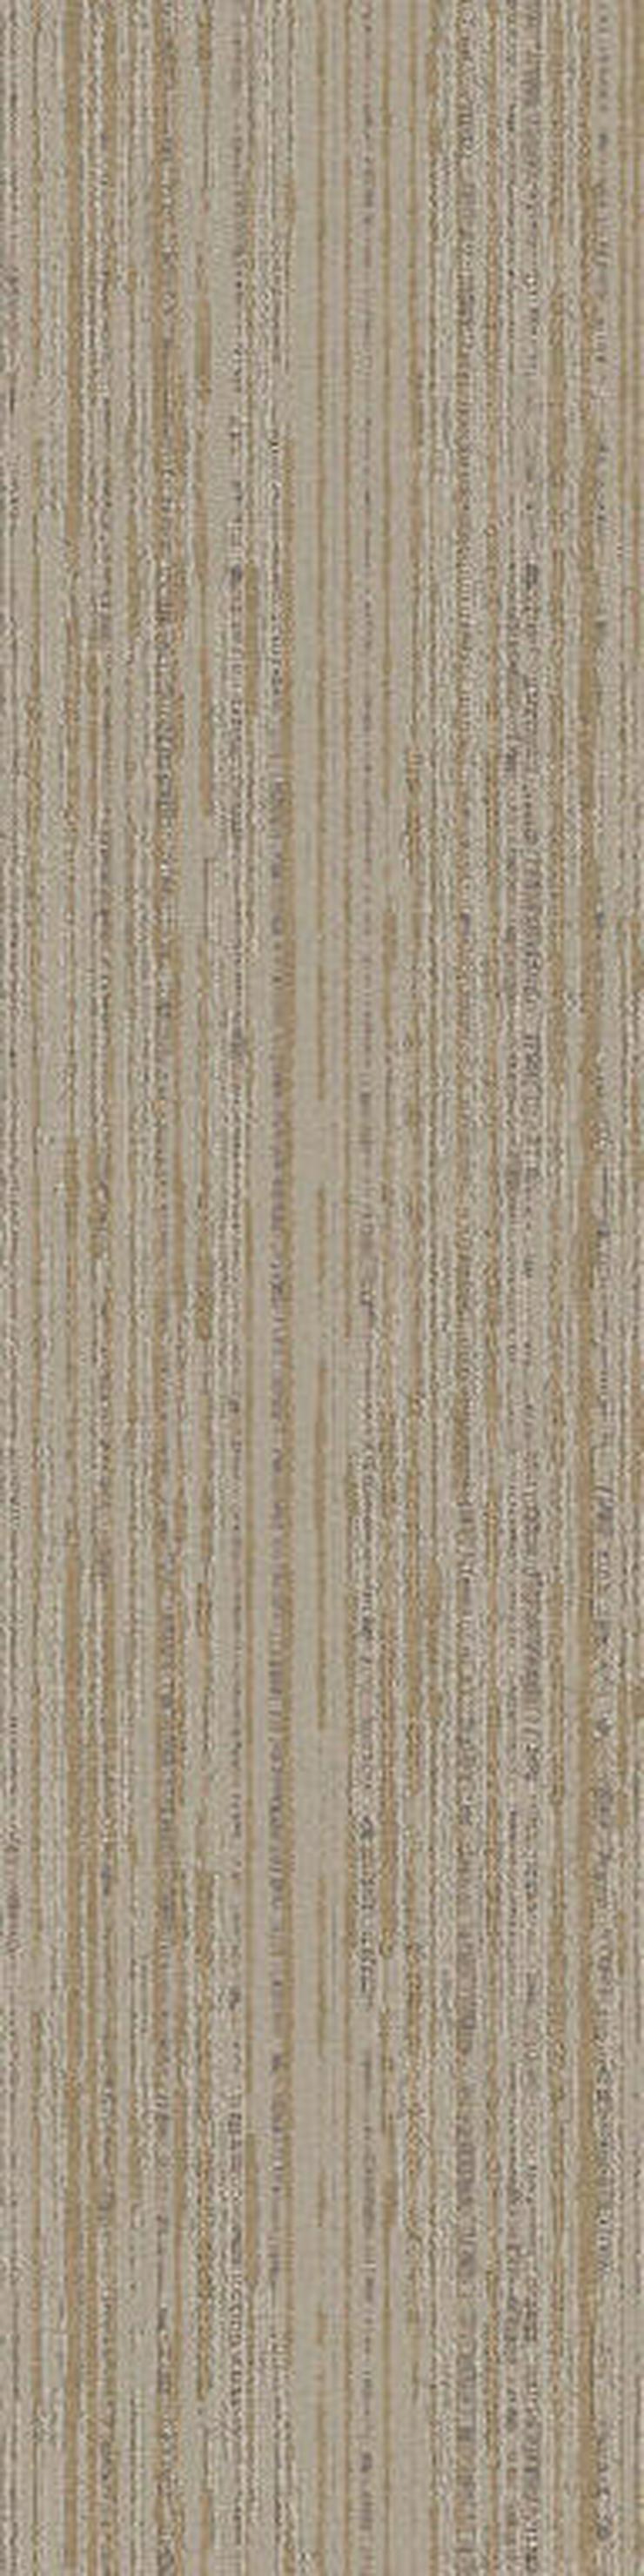 Schöne 25X100cm Teppichfliesen Mehrere Farben - Teppiche - Bild 11